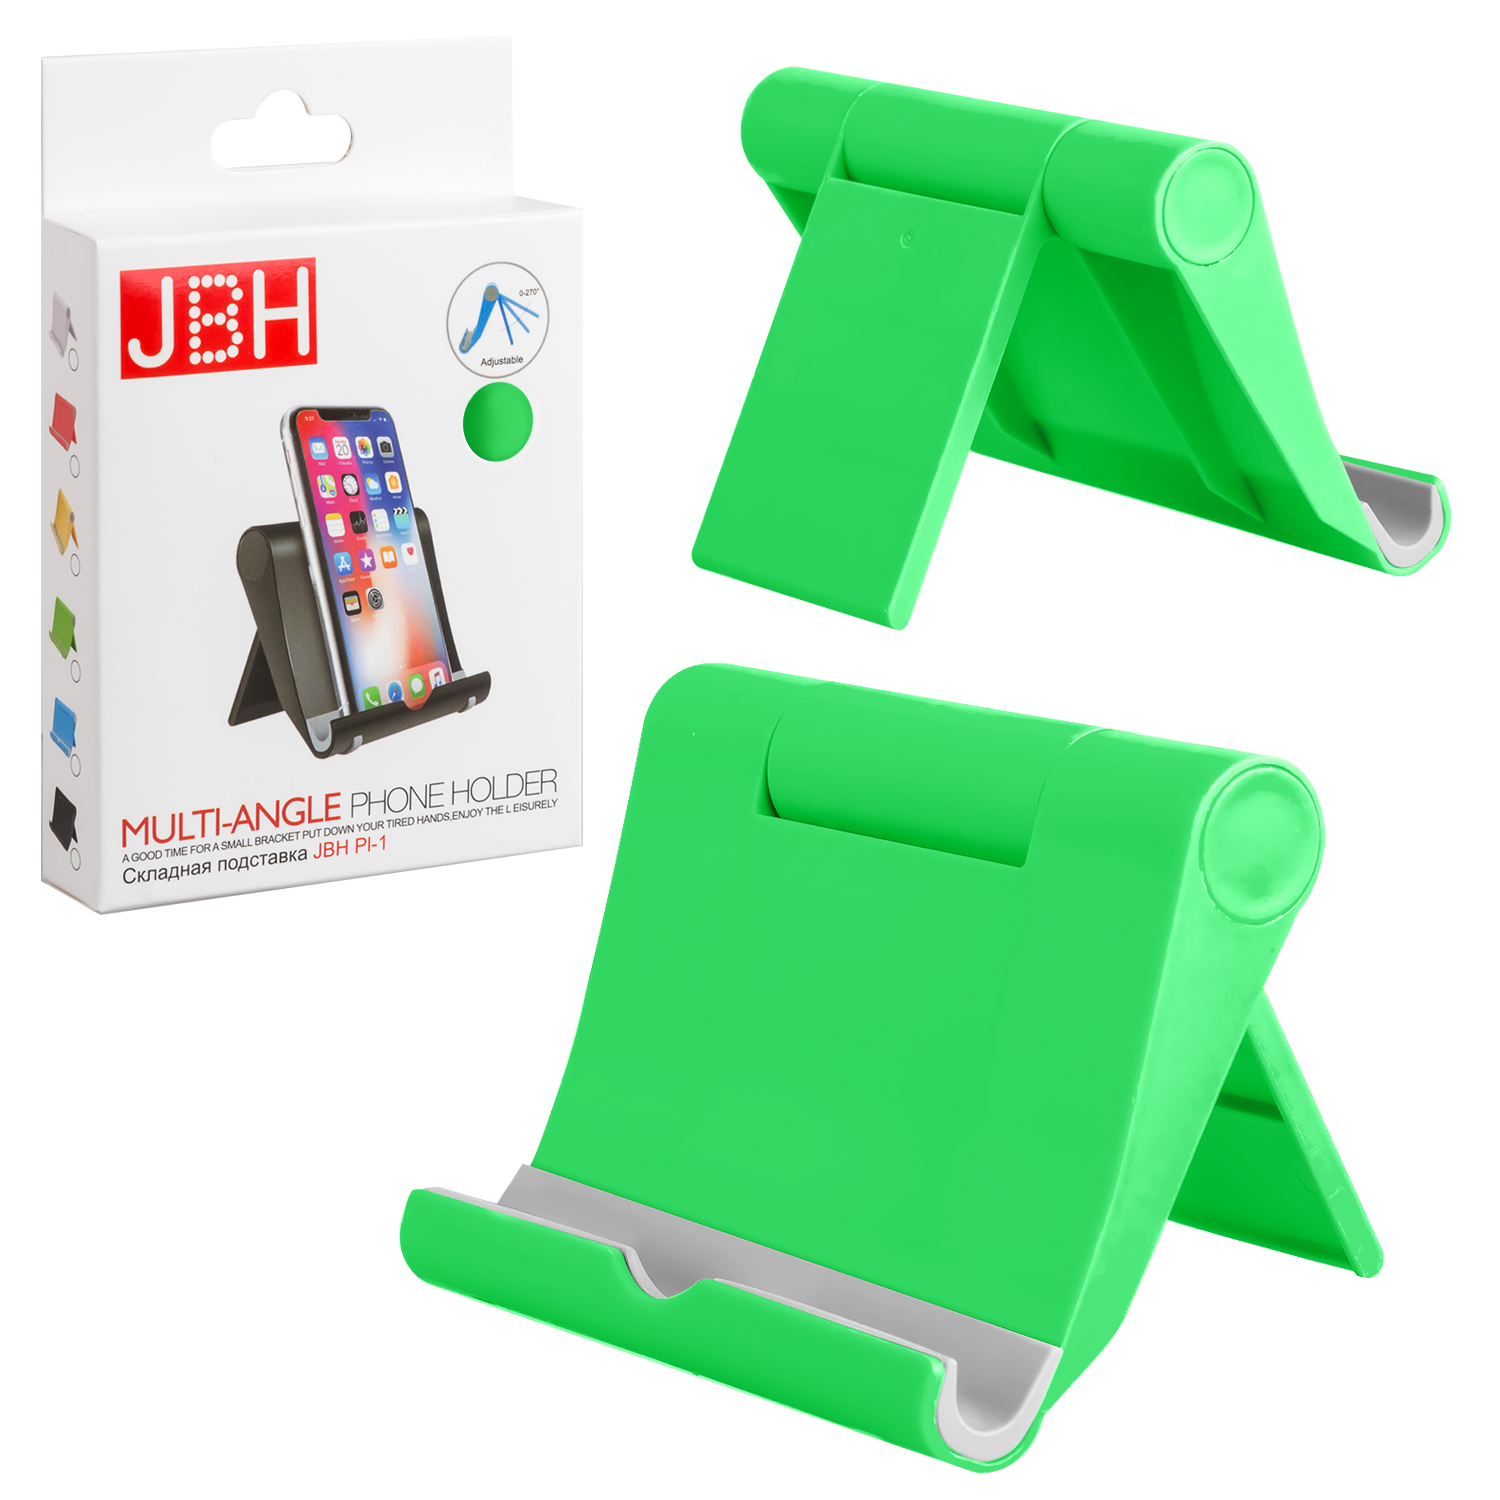 Складная подставка JBH PI-1 зеленая